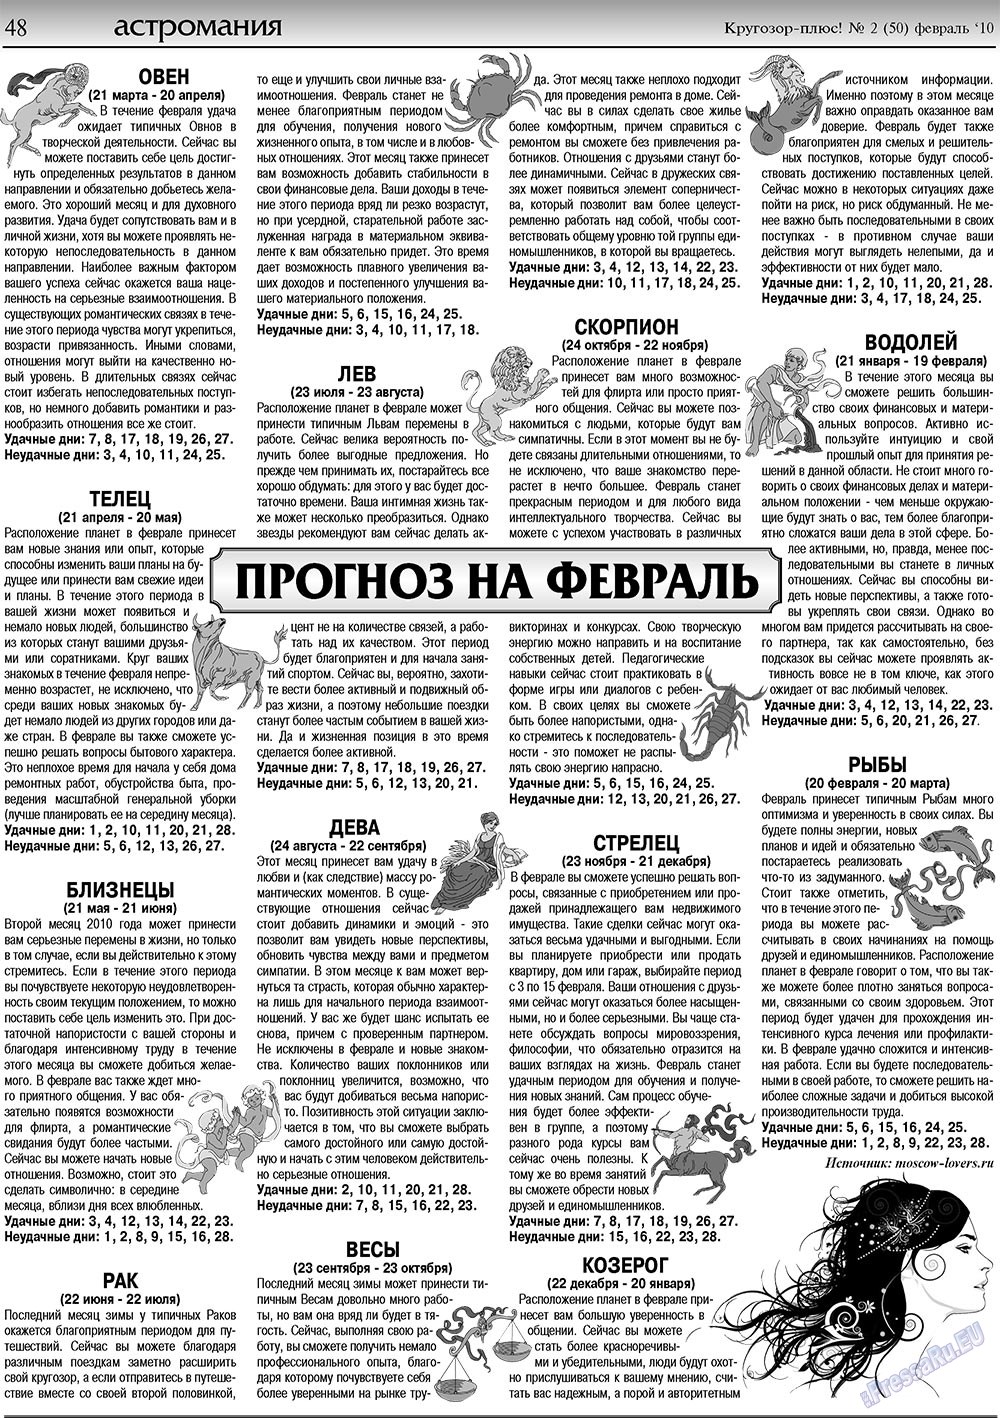 Кругозор плюс!, газета. 2010 №2 стр.48